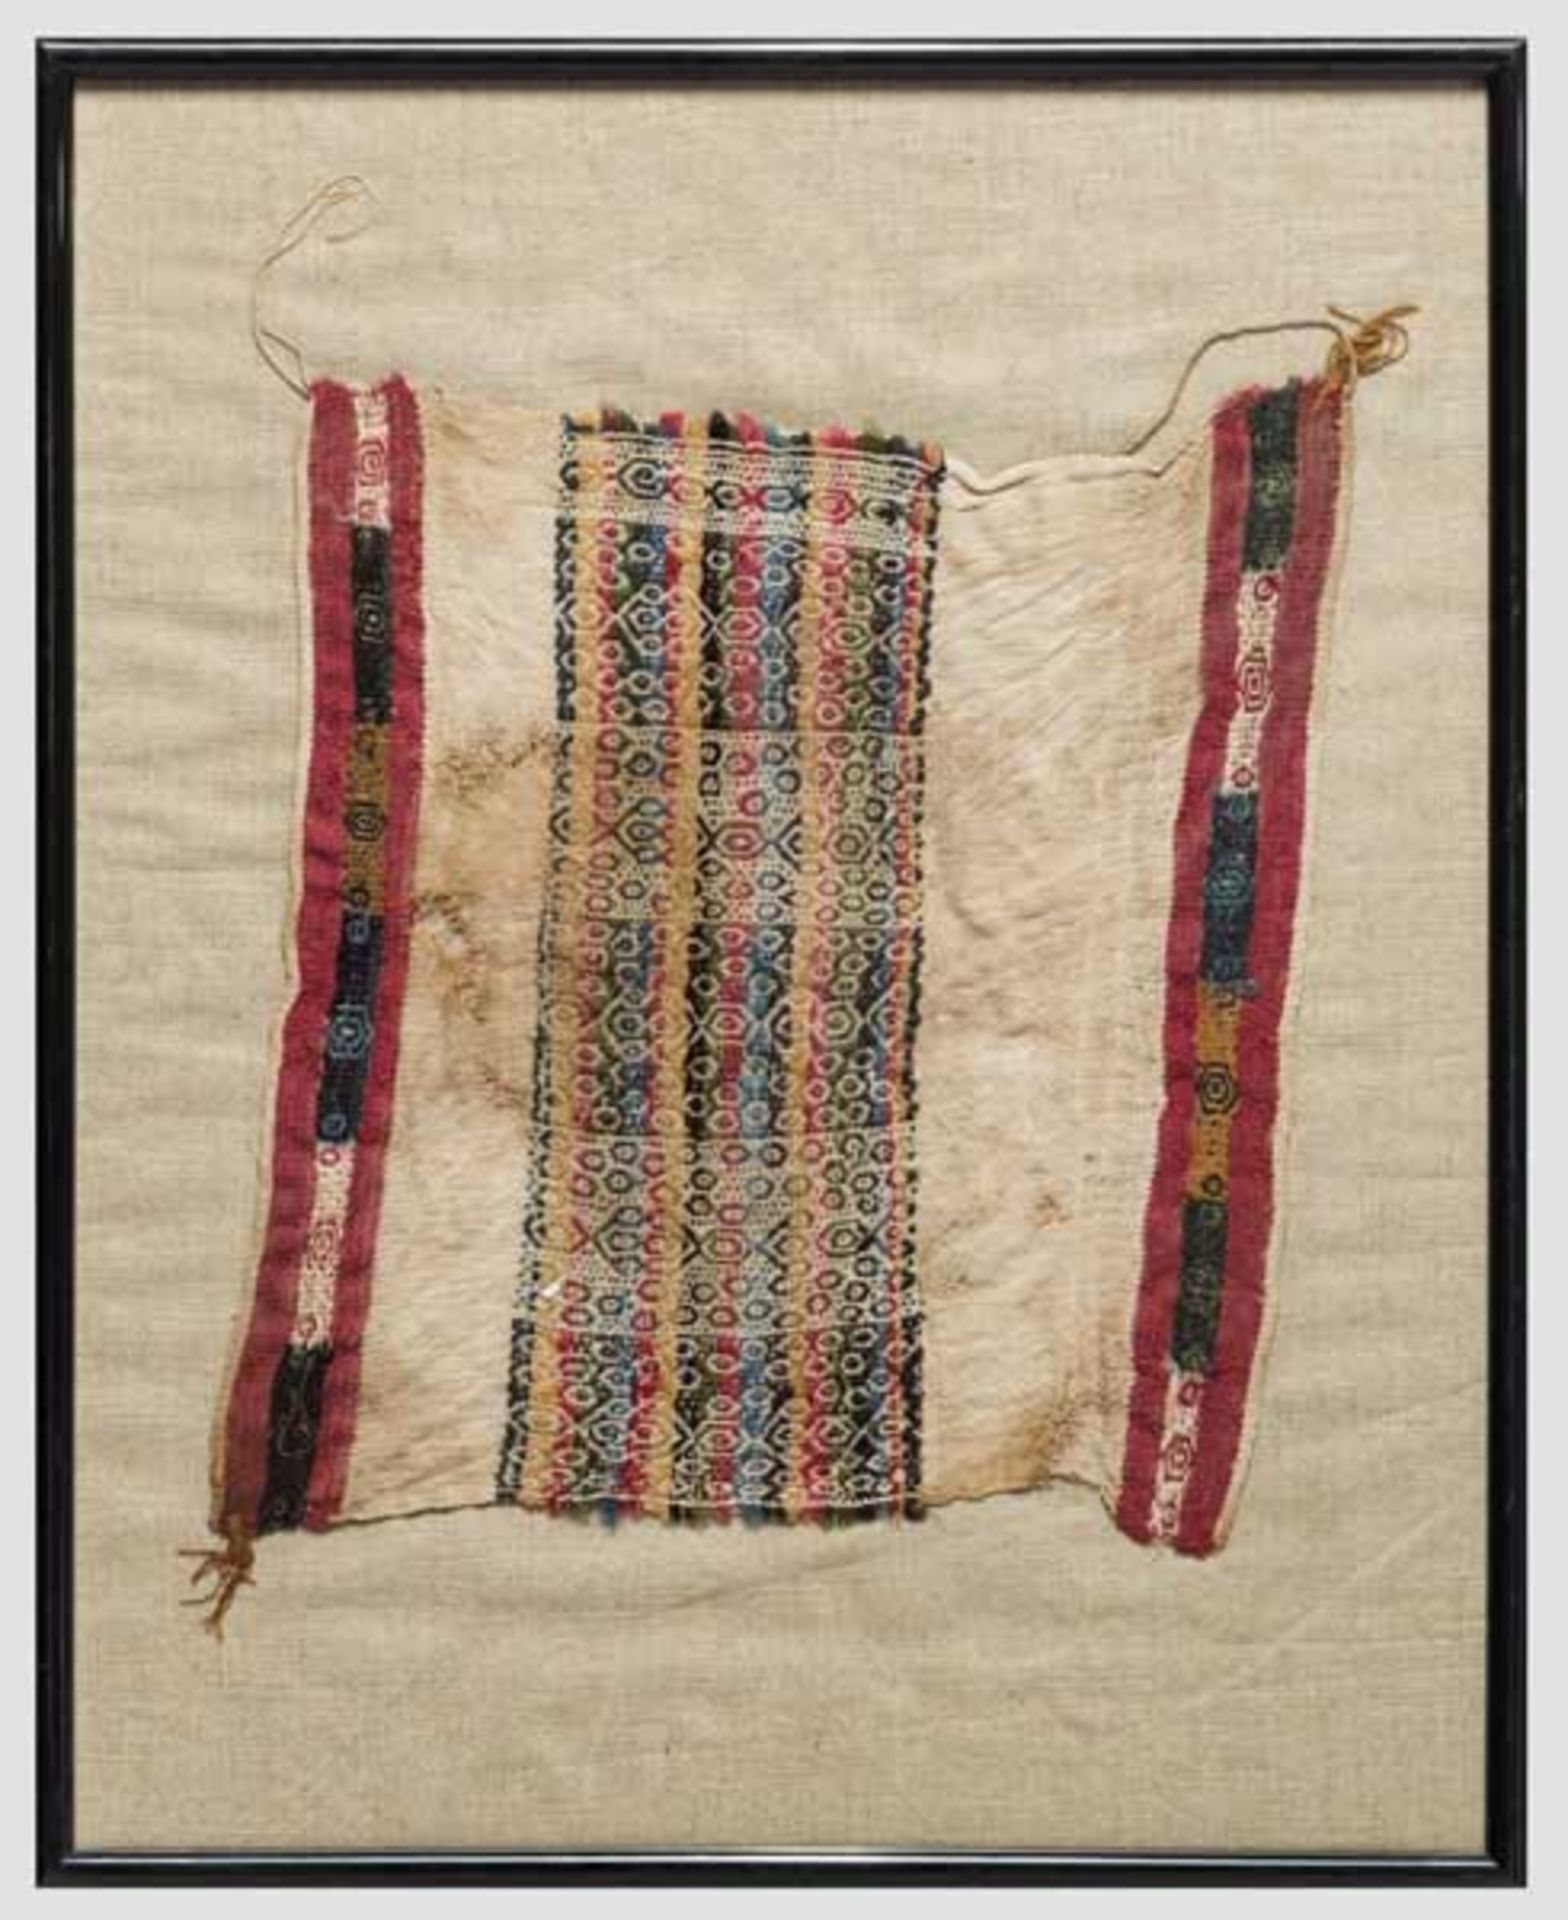 Textilfragment der Inka-Kultur, frühe Kolonialzeit Naturfarbener Baumwollstoff mit